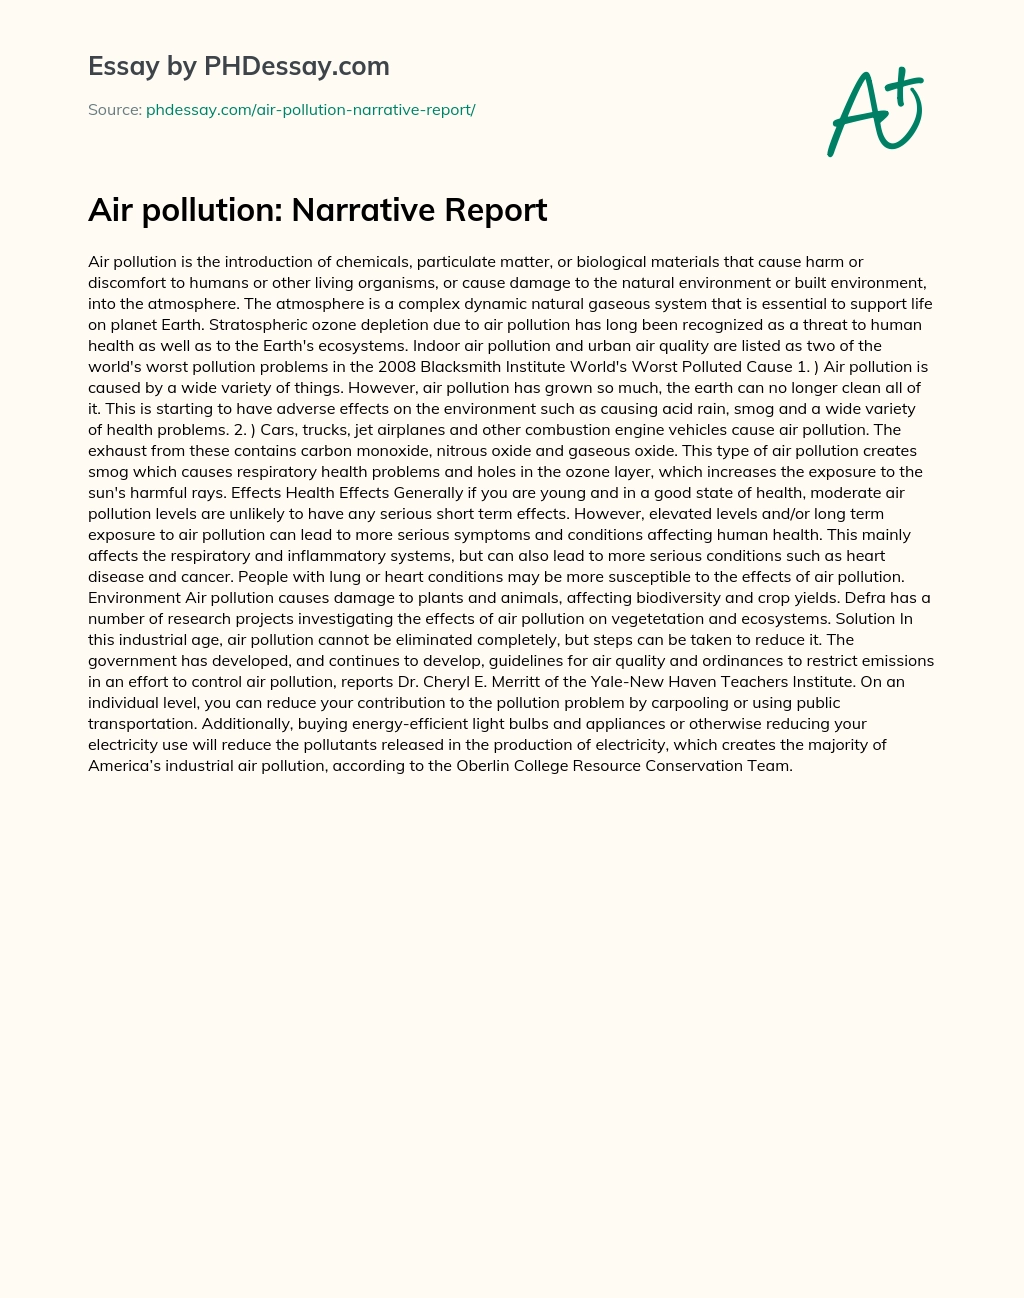 Air pollution: Narrative Report essay